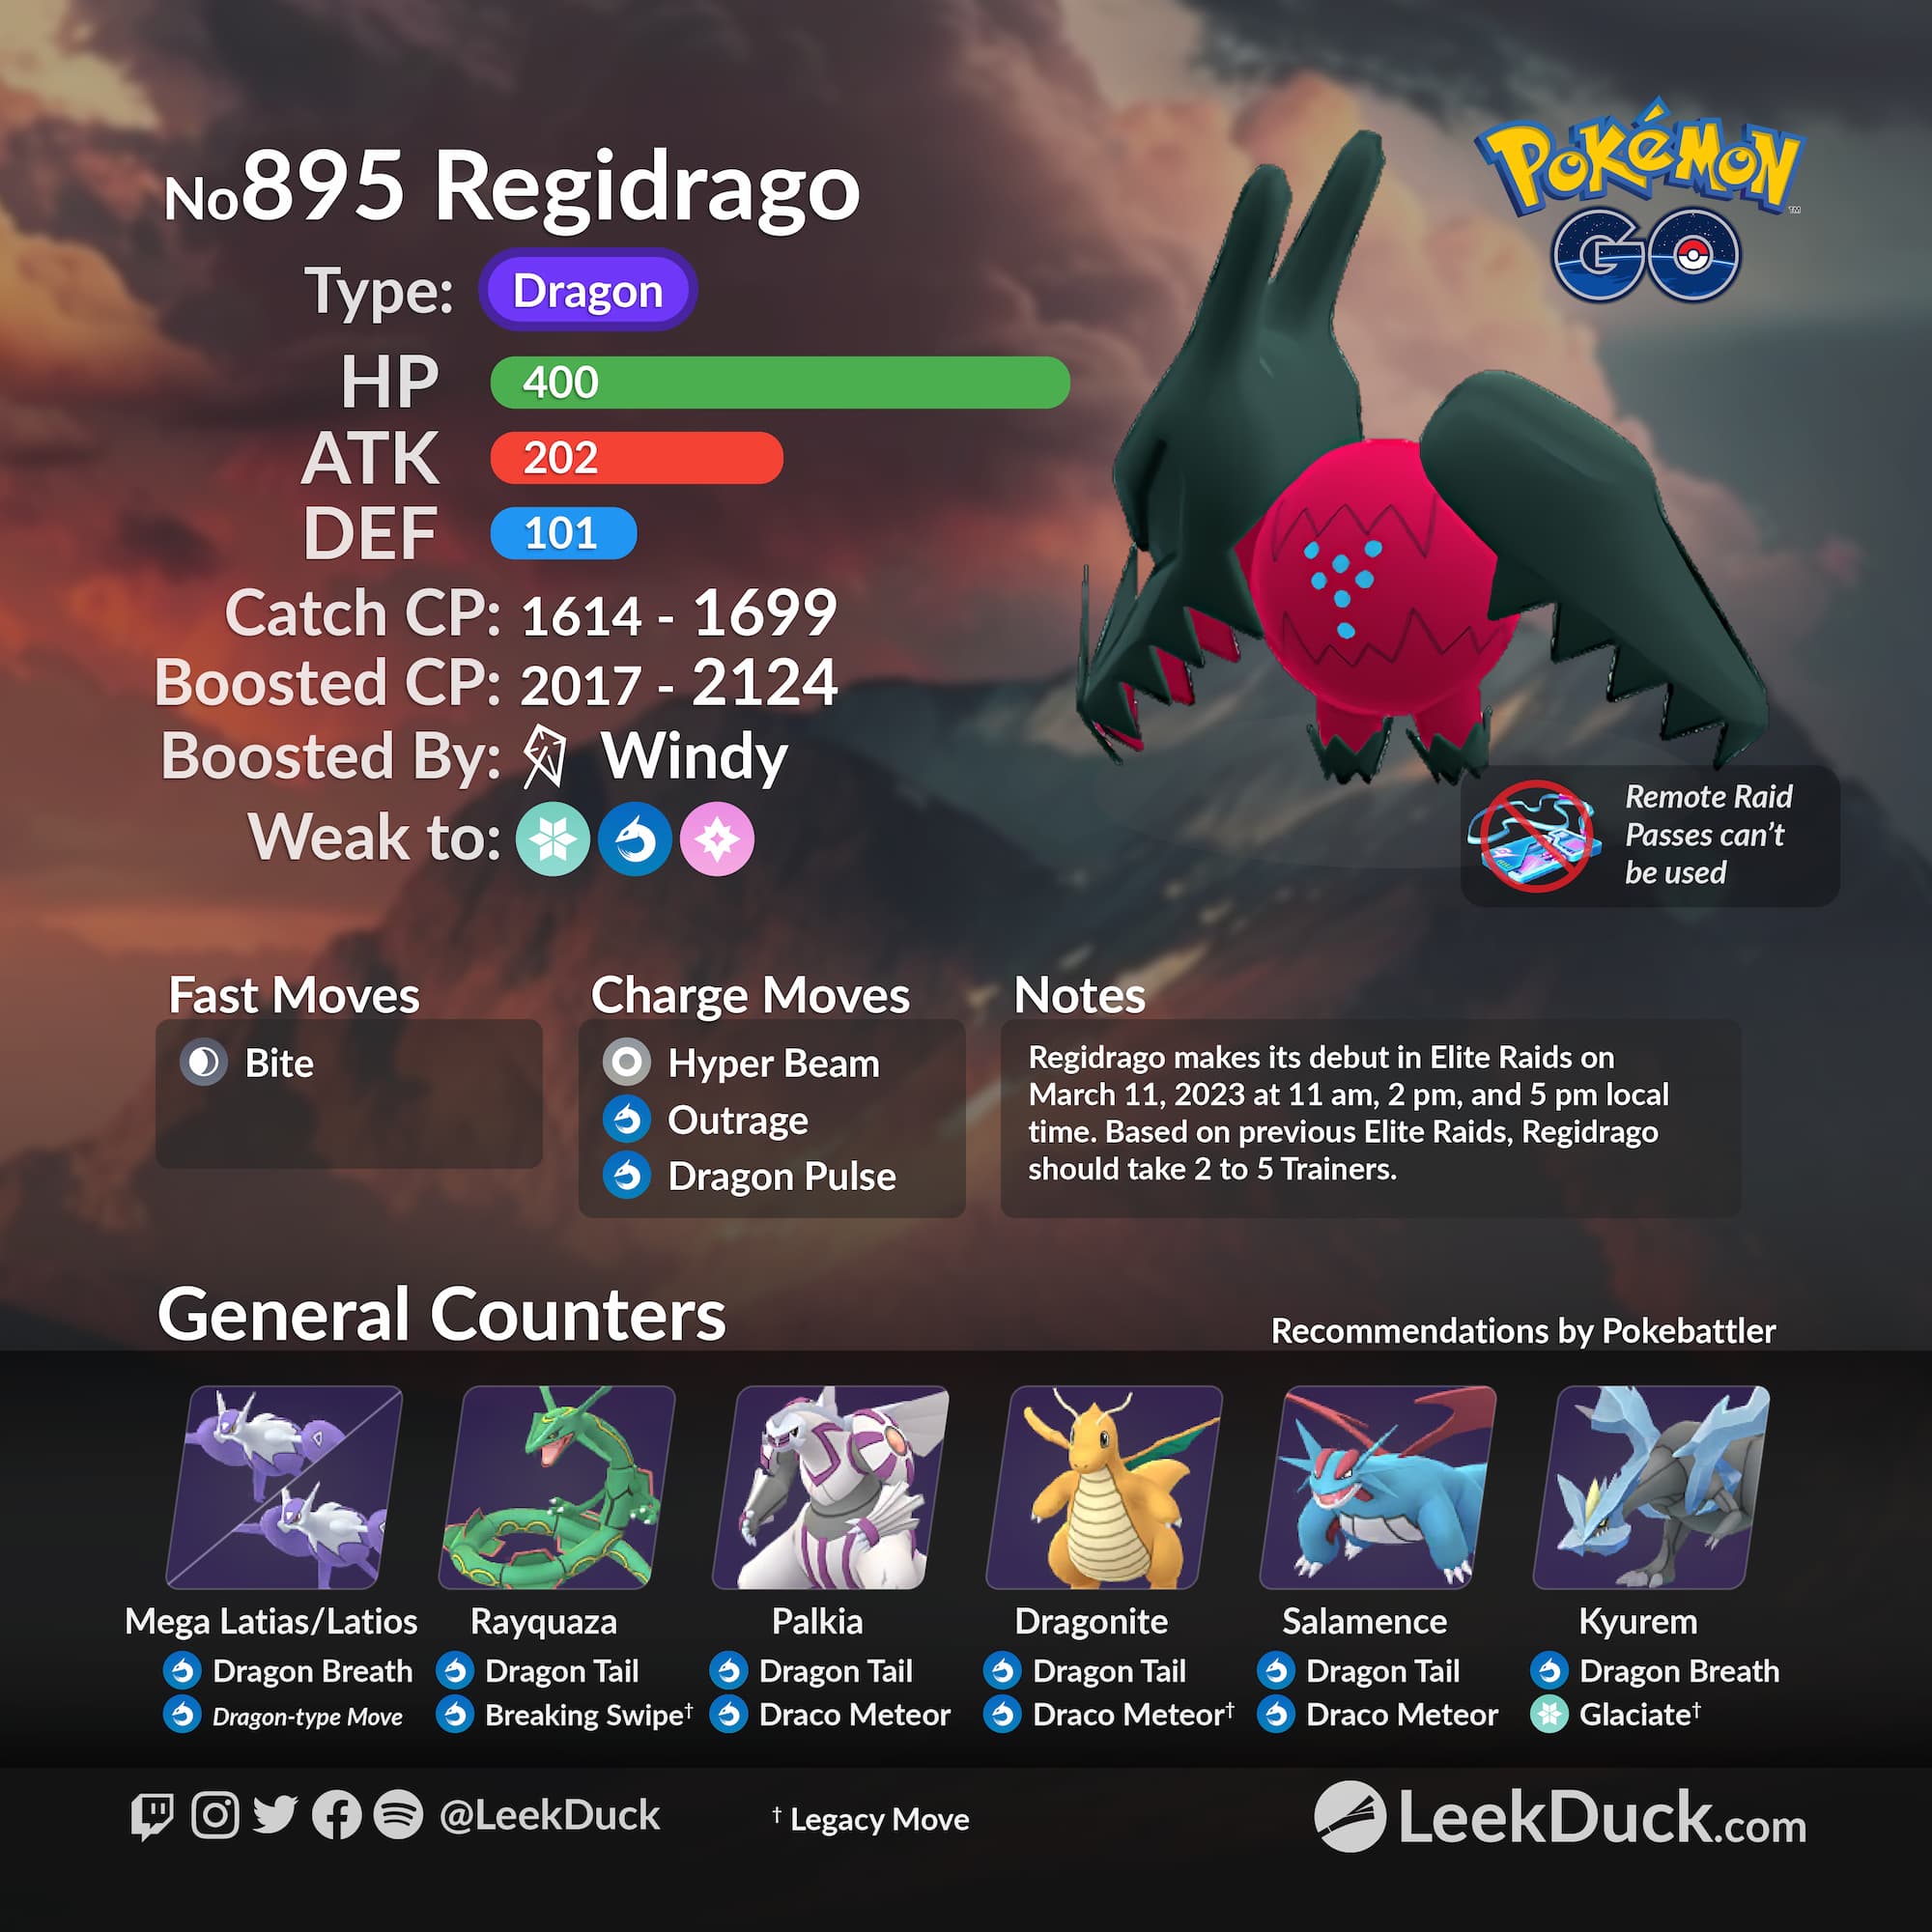 Pokémon Go Raids - Como funcionam as Raids, EX Raids, Raids Exclusivas,  Raid Bosses, Raid Passes e os prémios